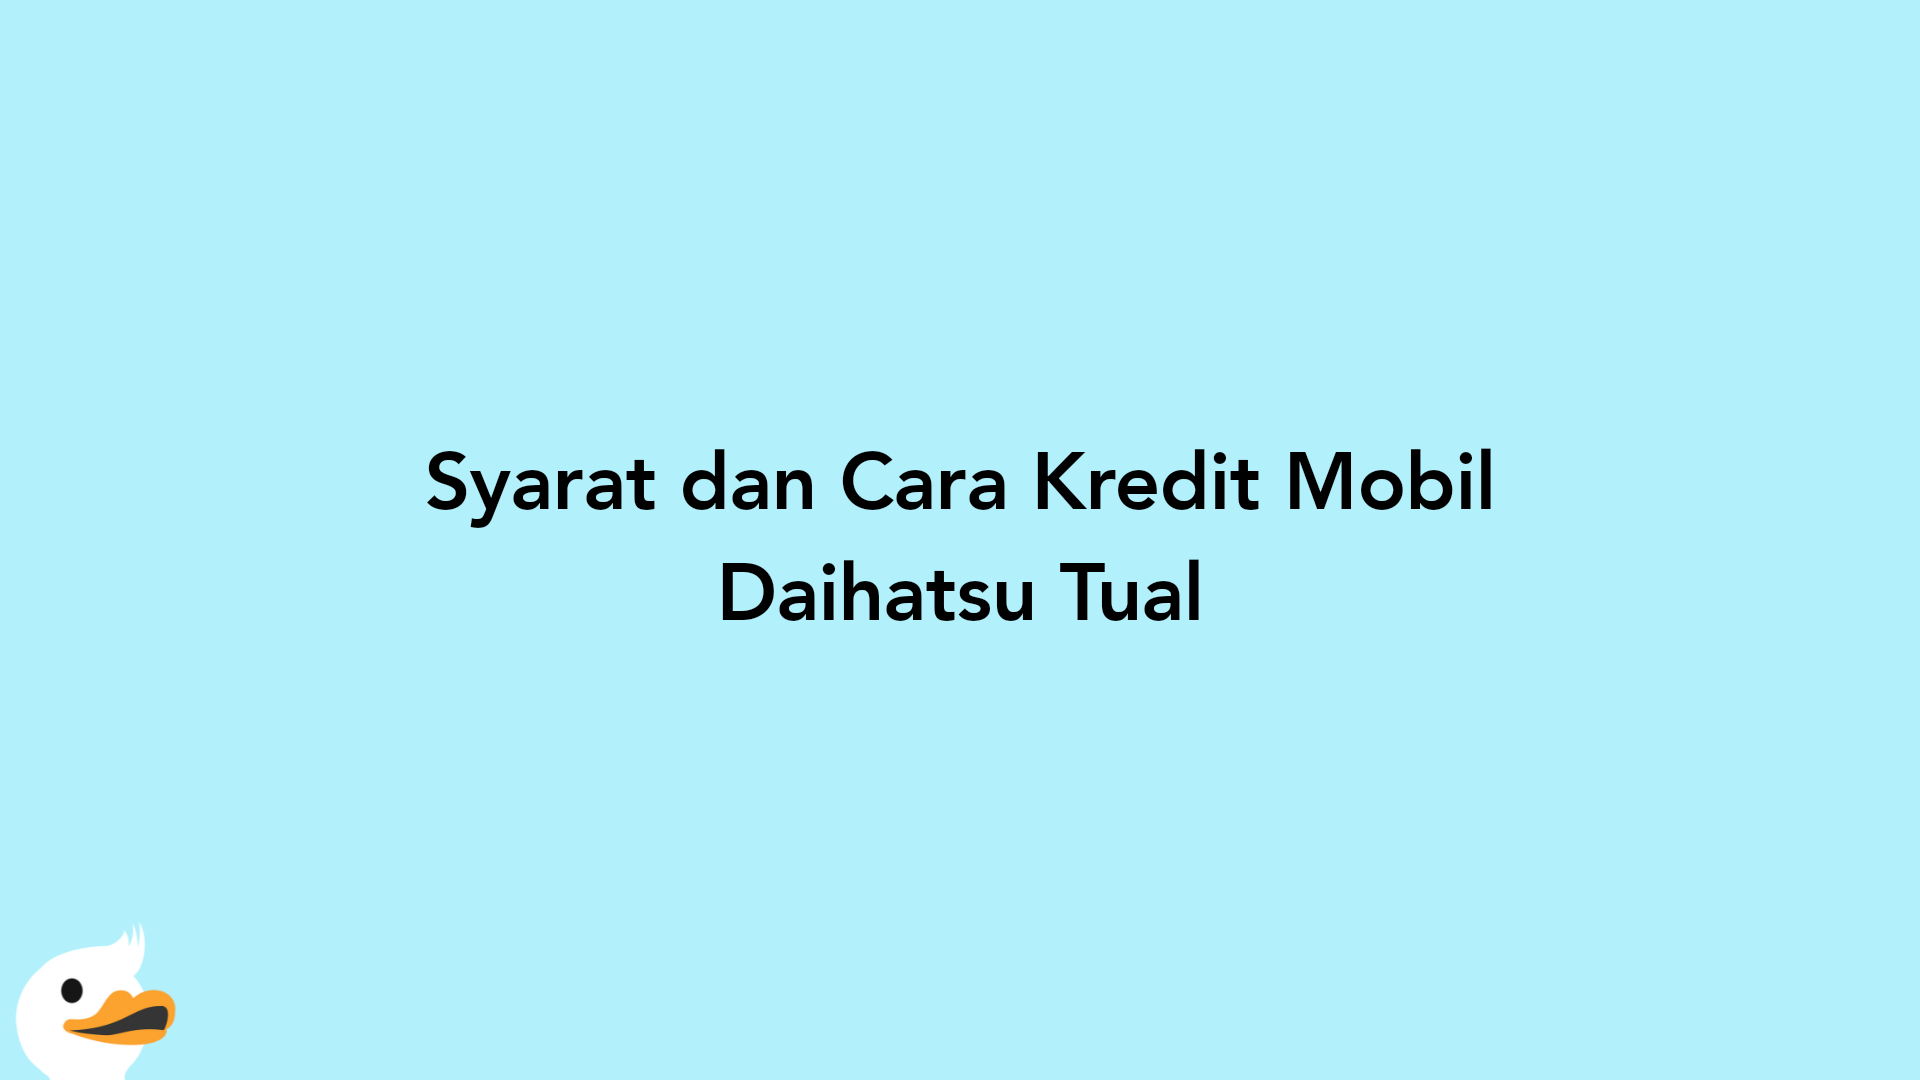 Syarat dan Cara Kredit Mobil Daihatsu Tual